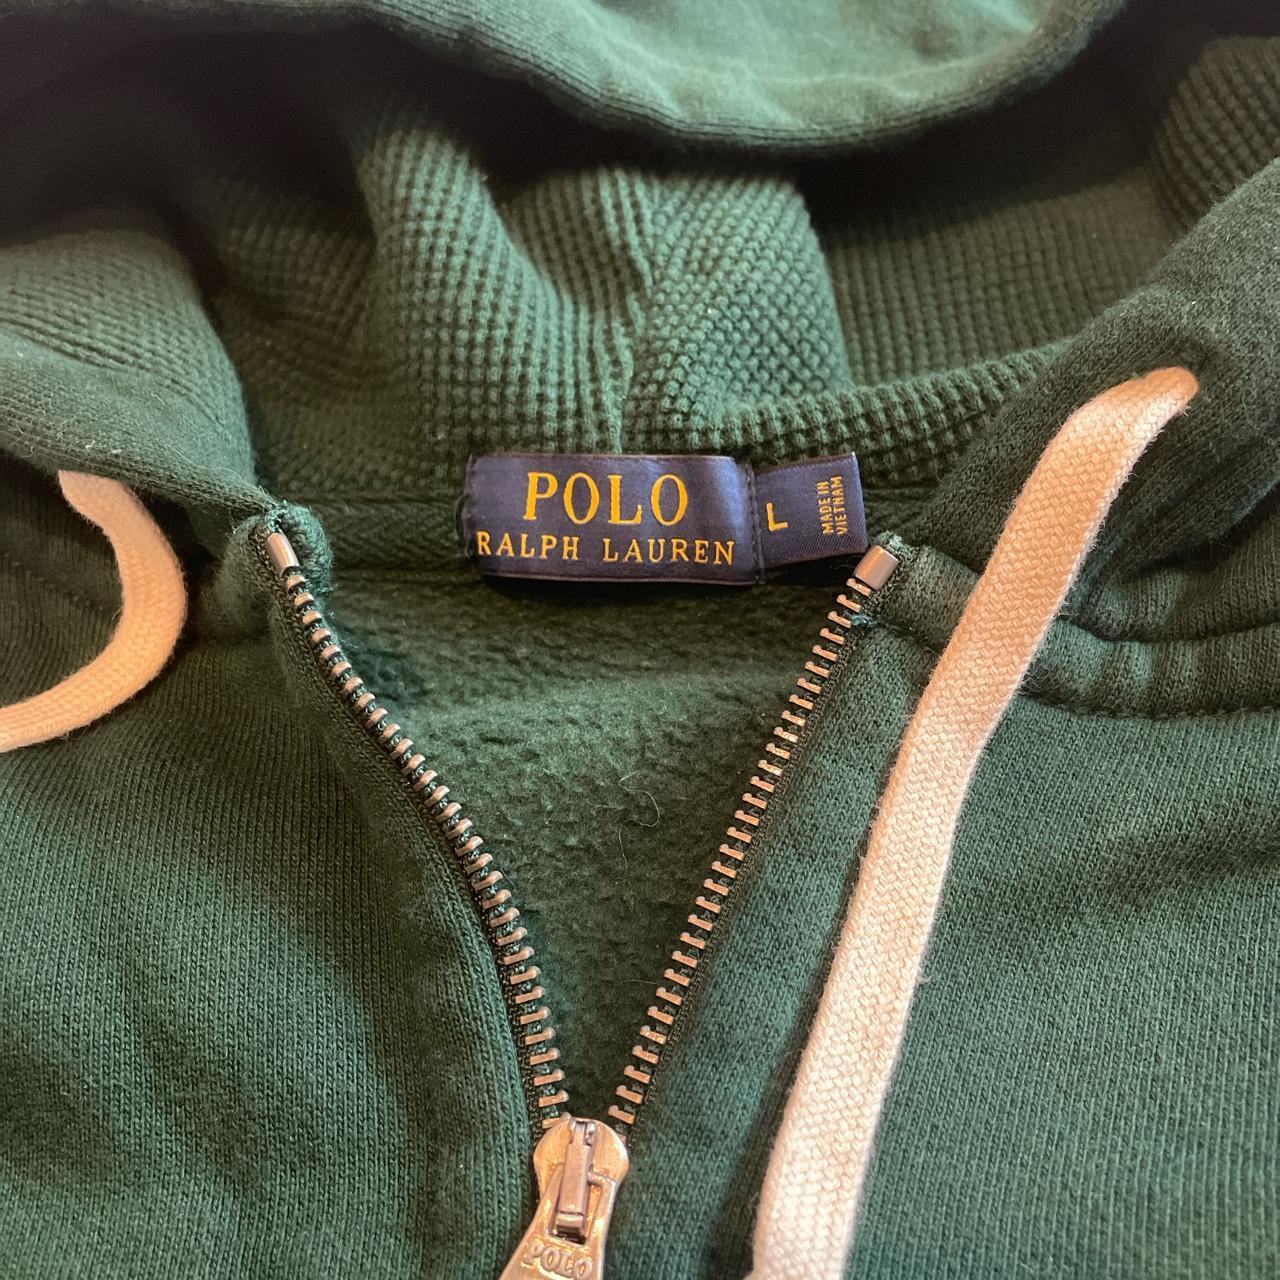 Vintage Polo Ralph Lauren Zip-Up Hoodie Great... - Depop